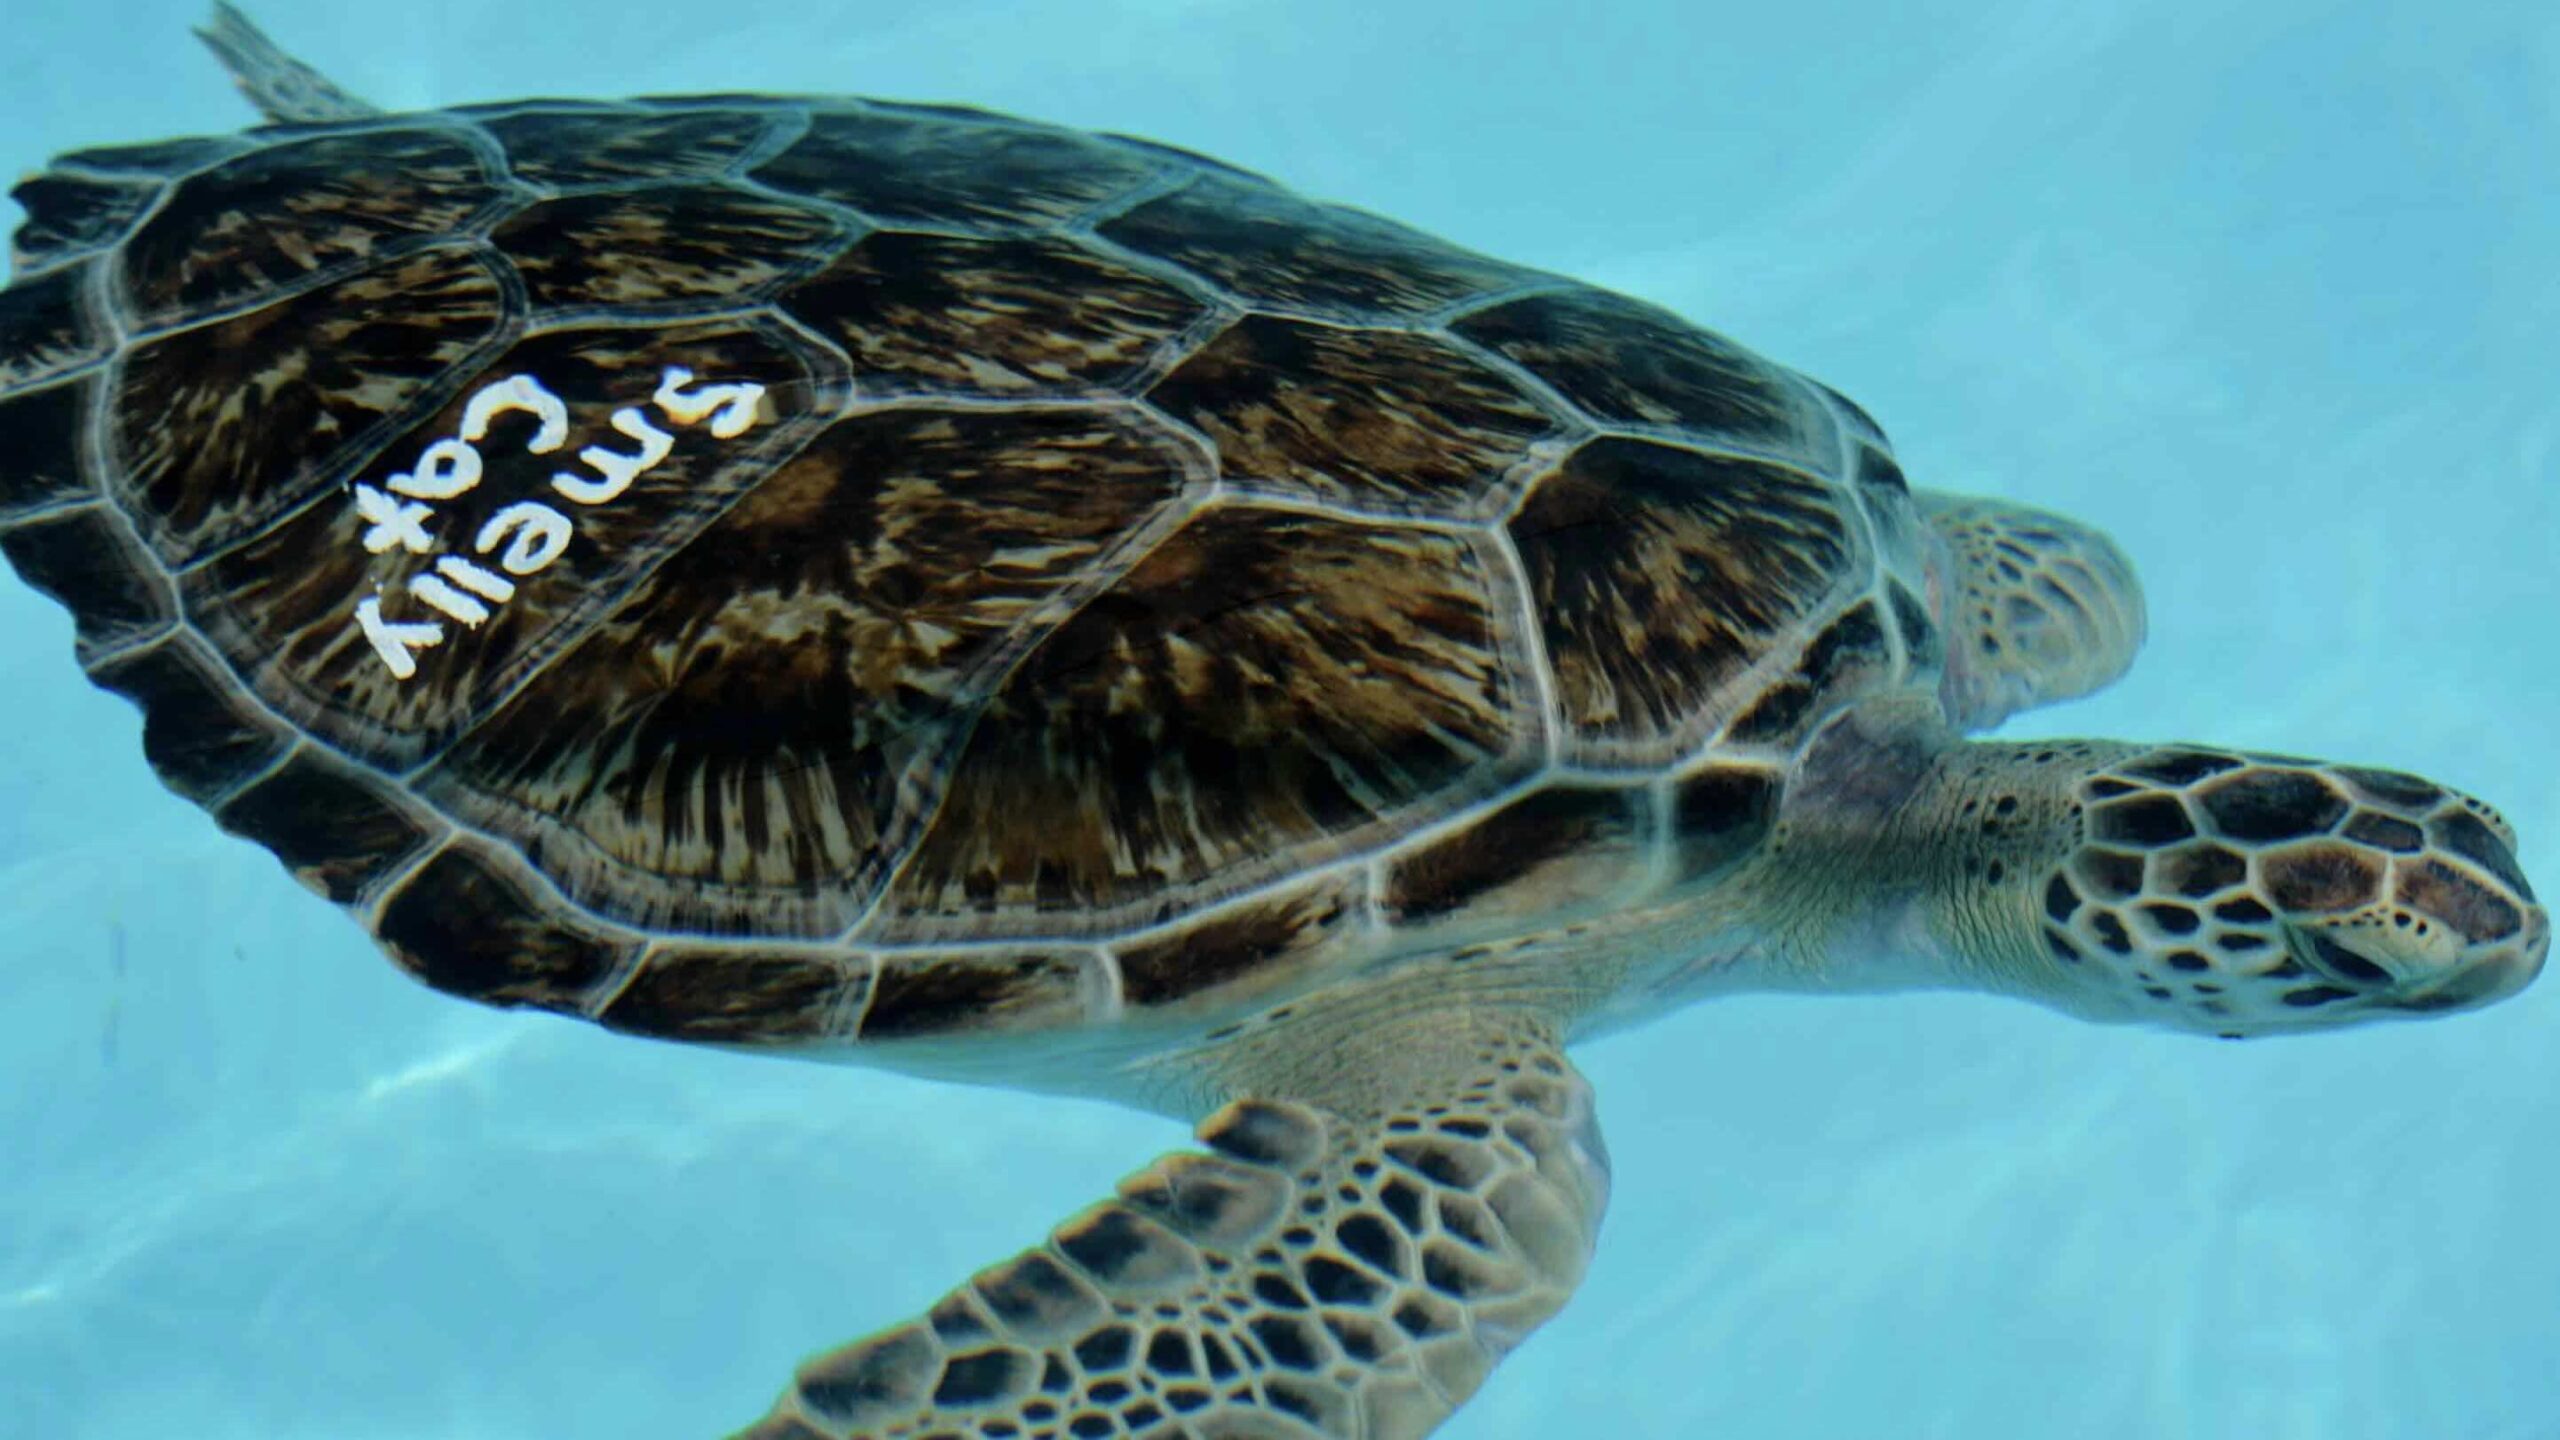 5. Turtle Hospital turtle swimming on a Florida Keys Road Trip